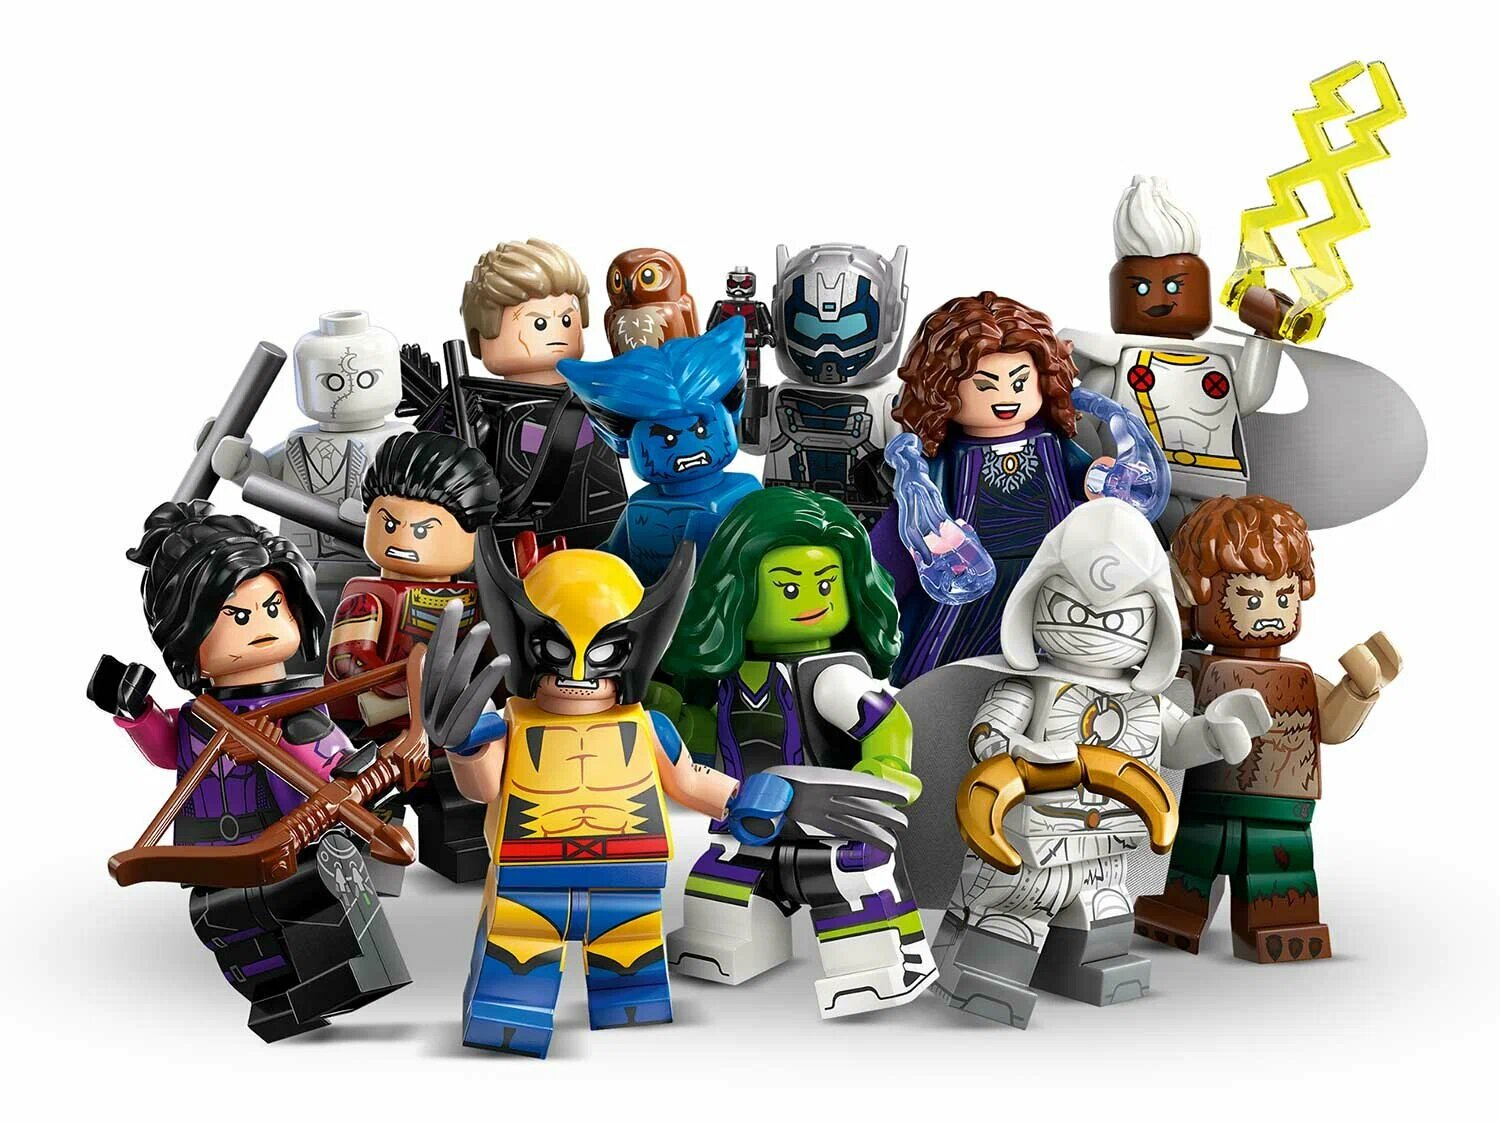 Конструктор LEGO Minifigures Marvel Series 2, 71039-6: Соколиный глаз, 1 шт. в упак.